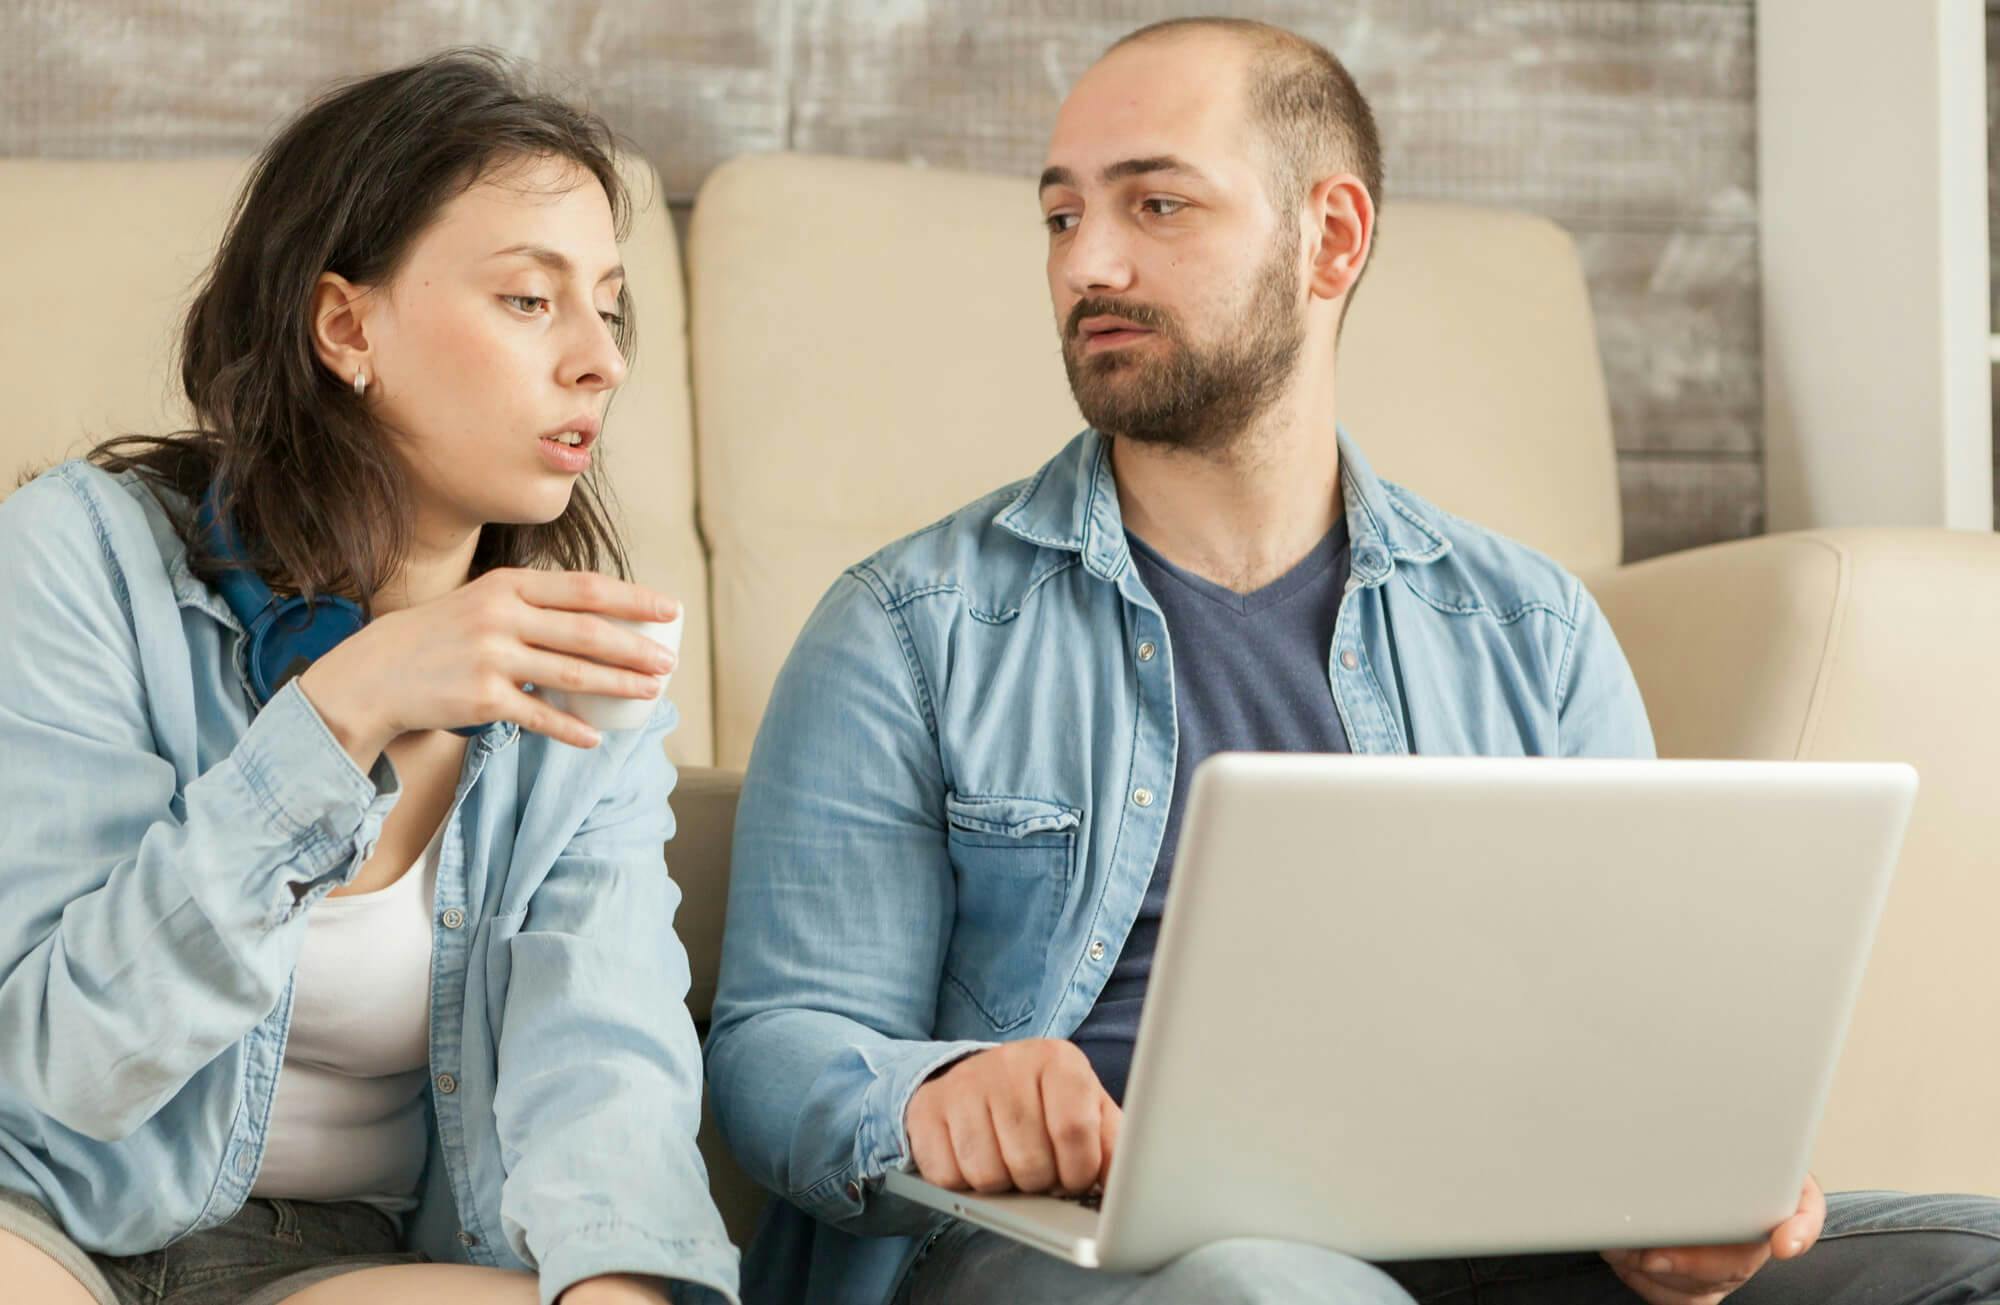 Psicólogo online brindando terapia a una pareja, ayudándoles a enfrentar y superar los celos en su relación.